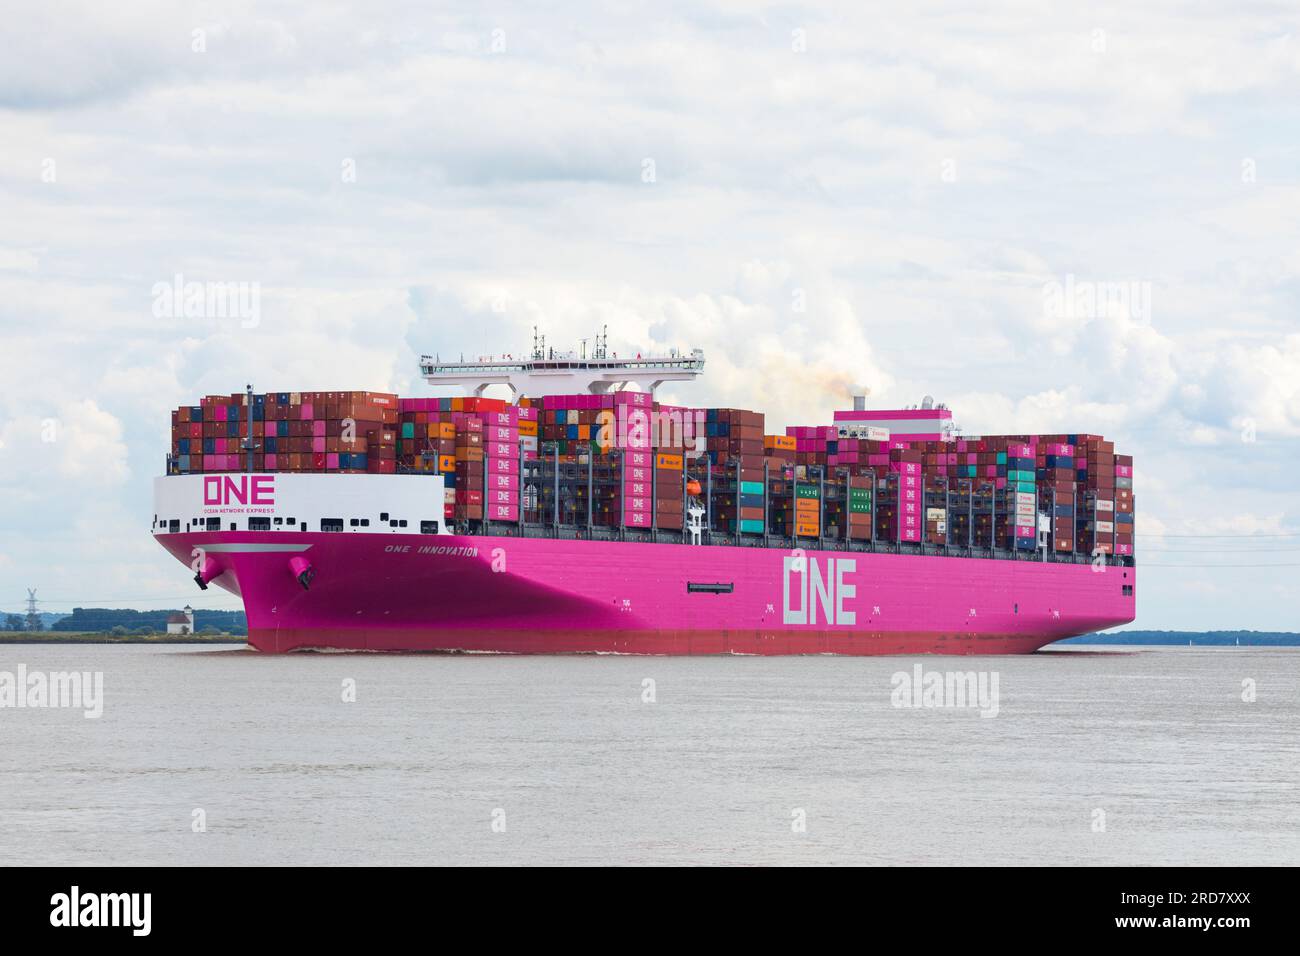 Stade, Deutschland – 18. Juli 2023: ONE Innovation, der neueste und größte Zuwachs der Containerschiffflotte von Ocean Network Express Pte. Ltd Stockfoto